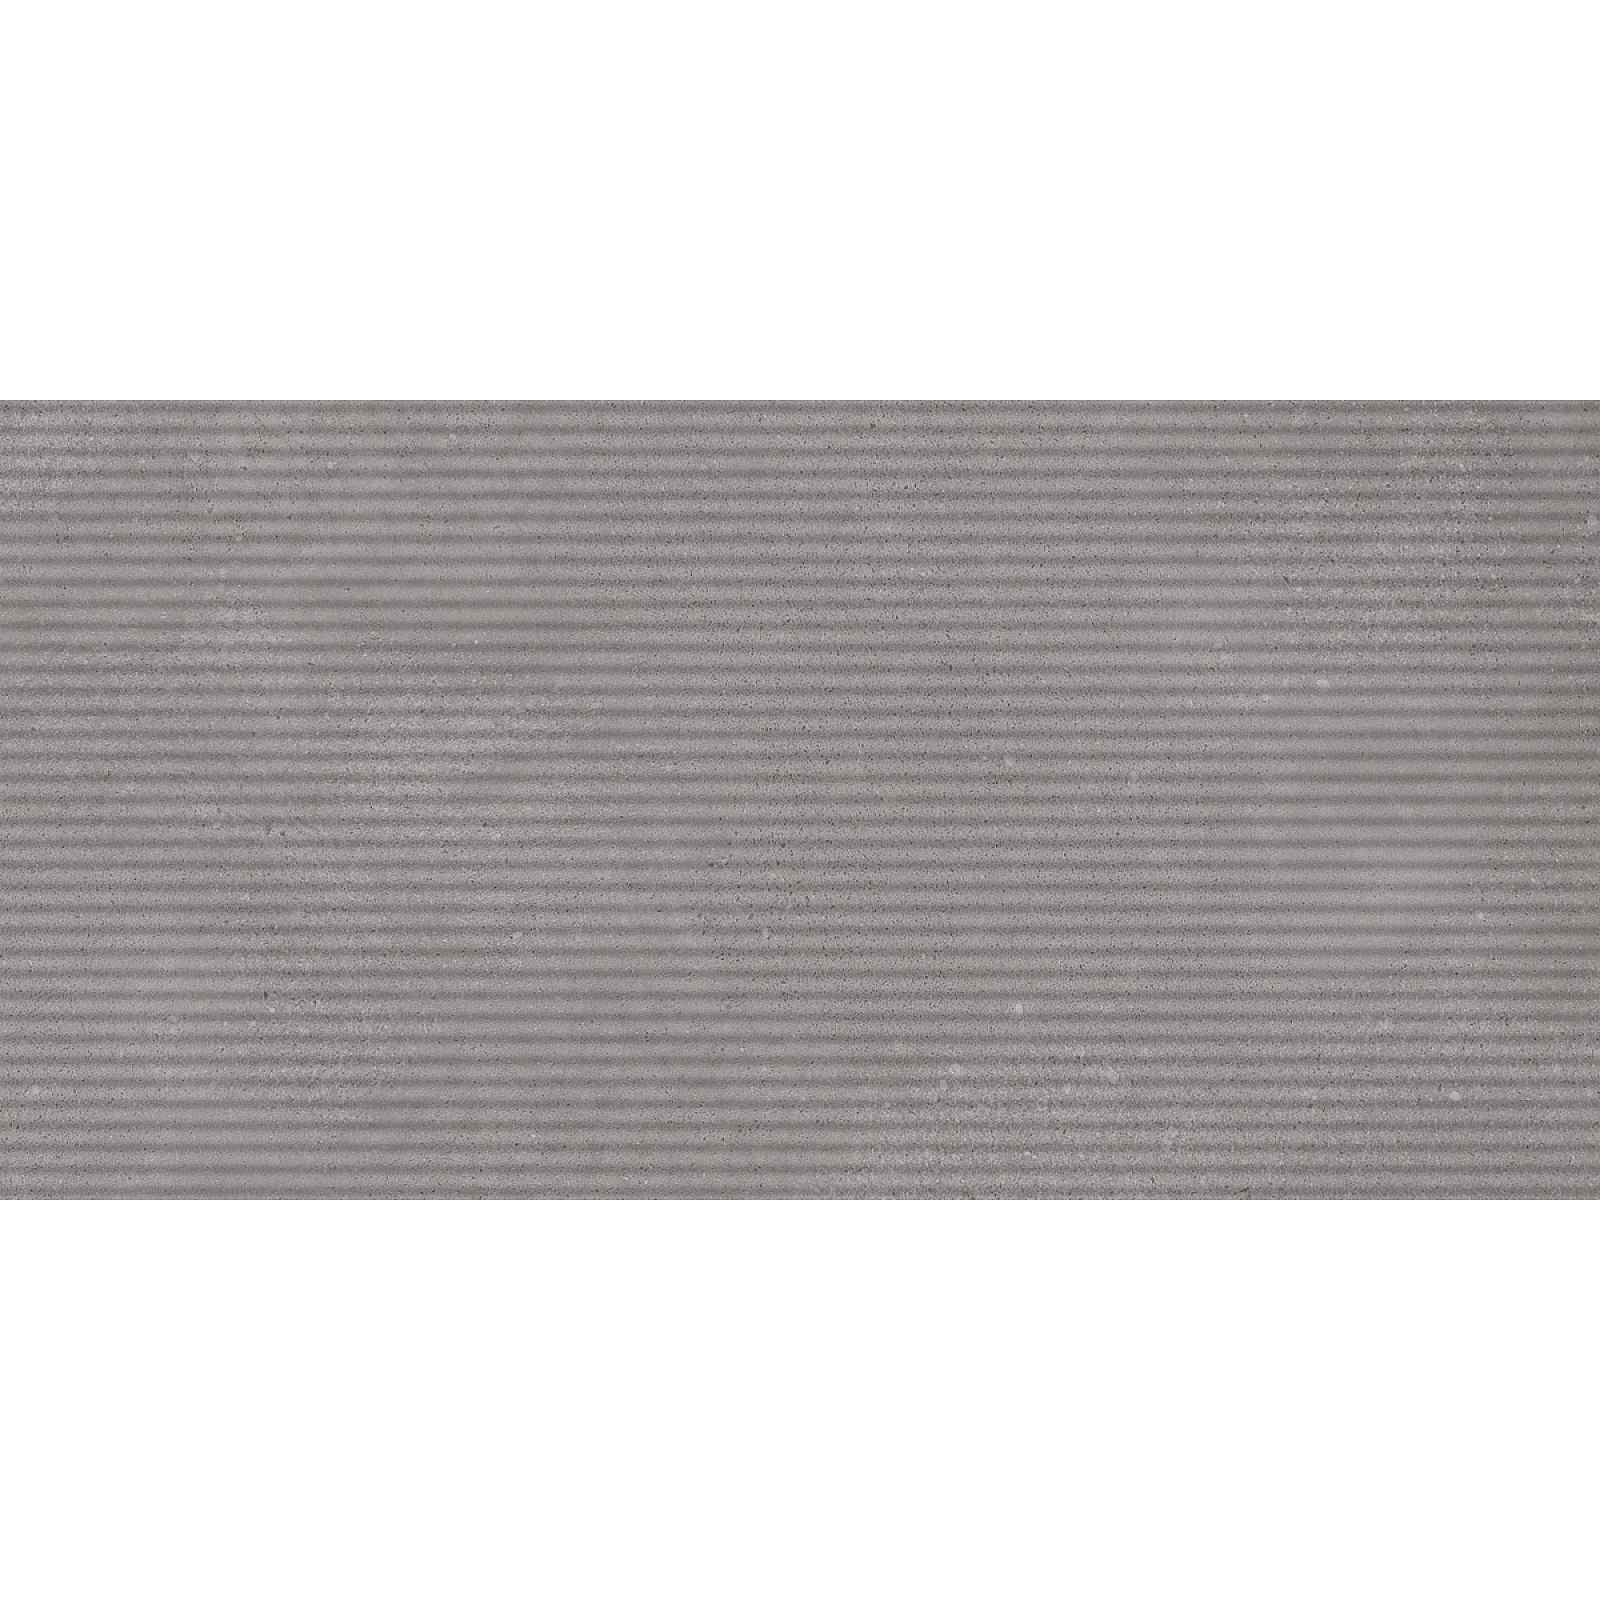 Obklad Rako Betonico šedá 30x60 cm reliéfní WARVK791.1